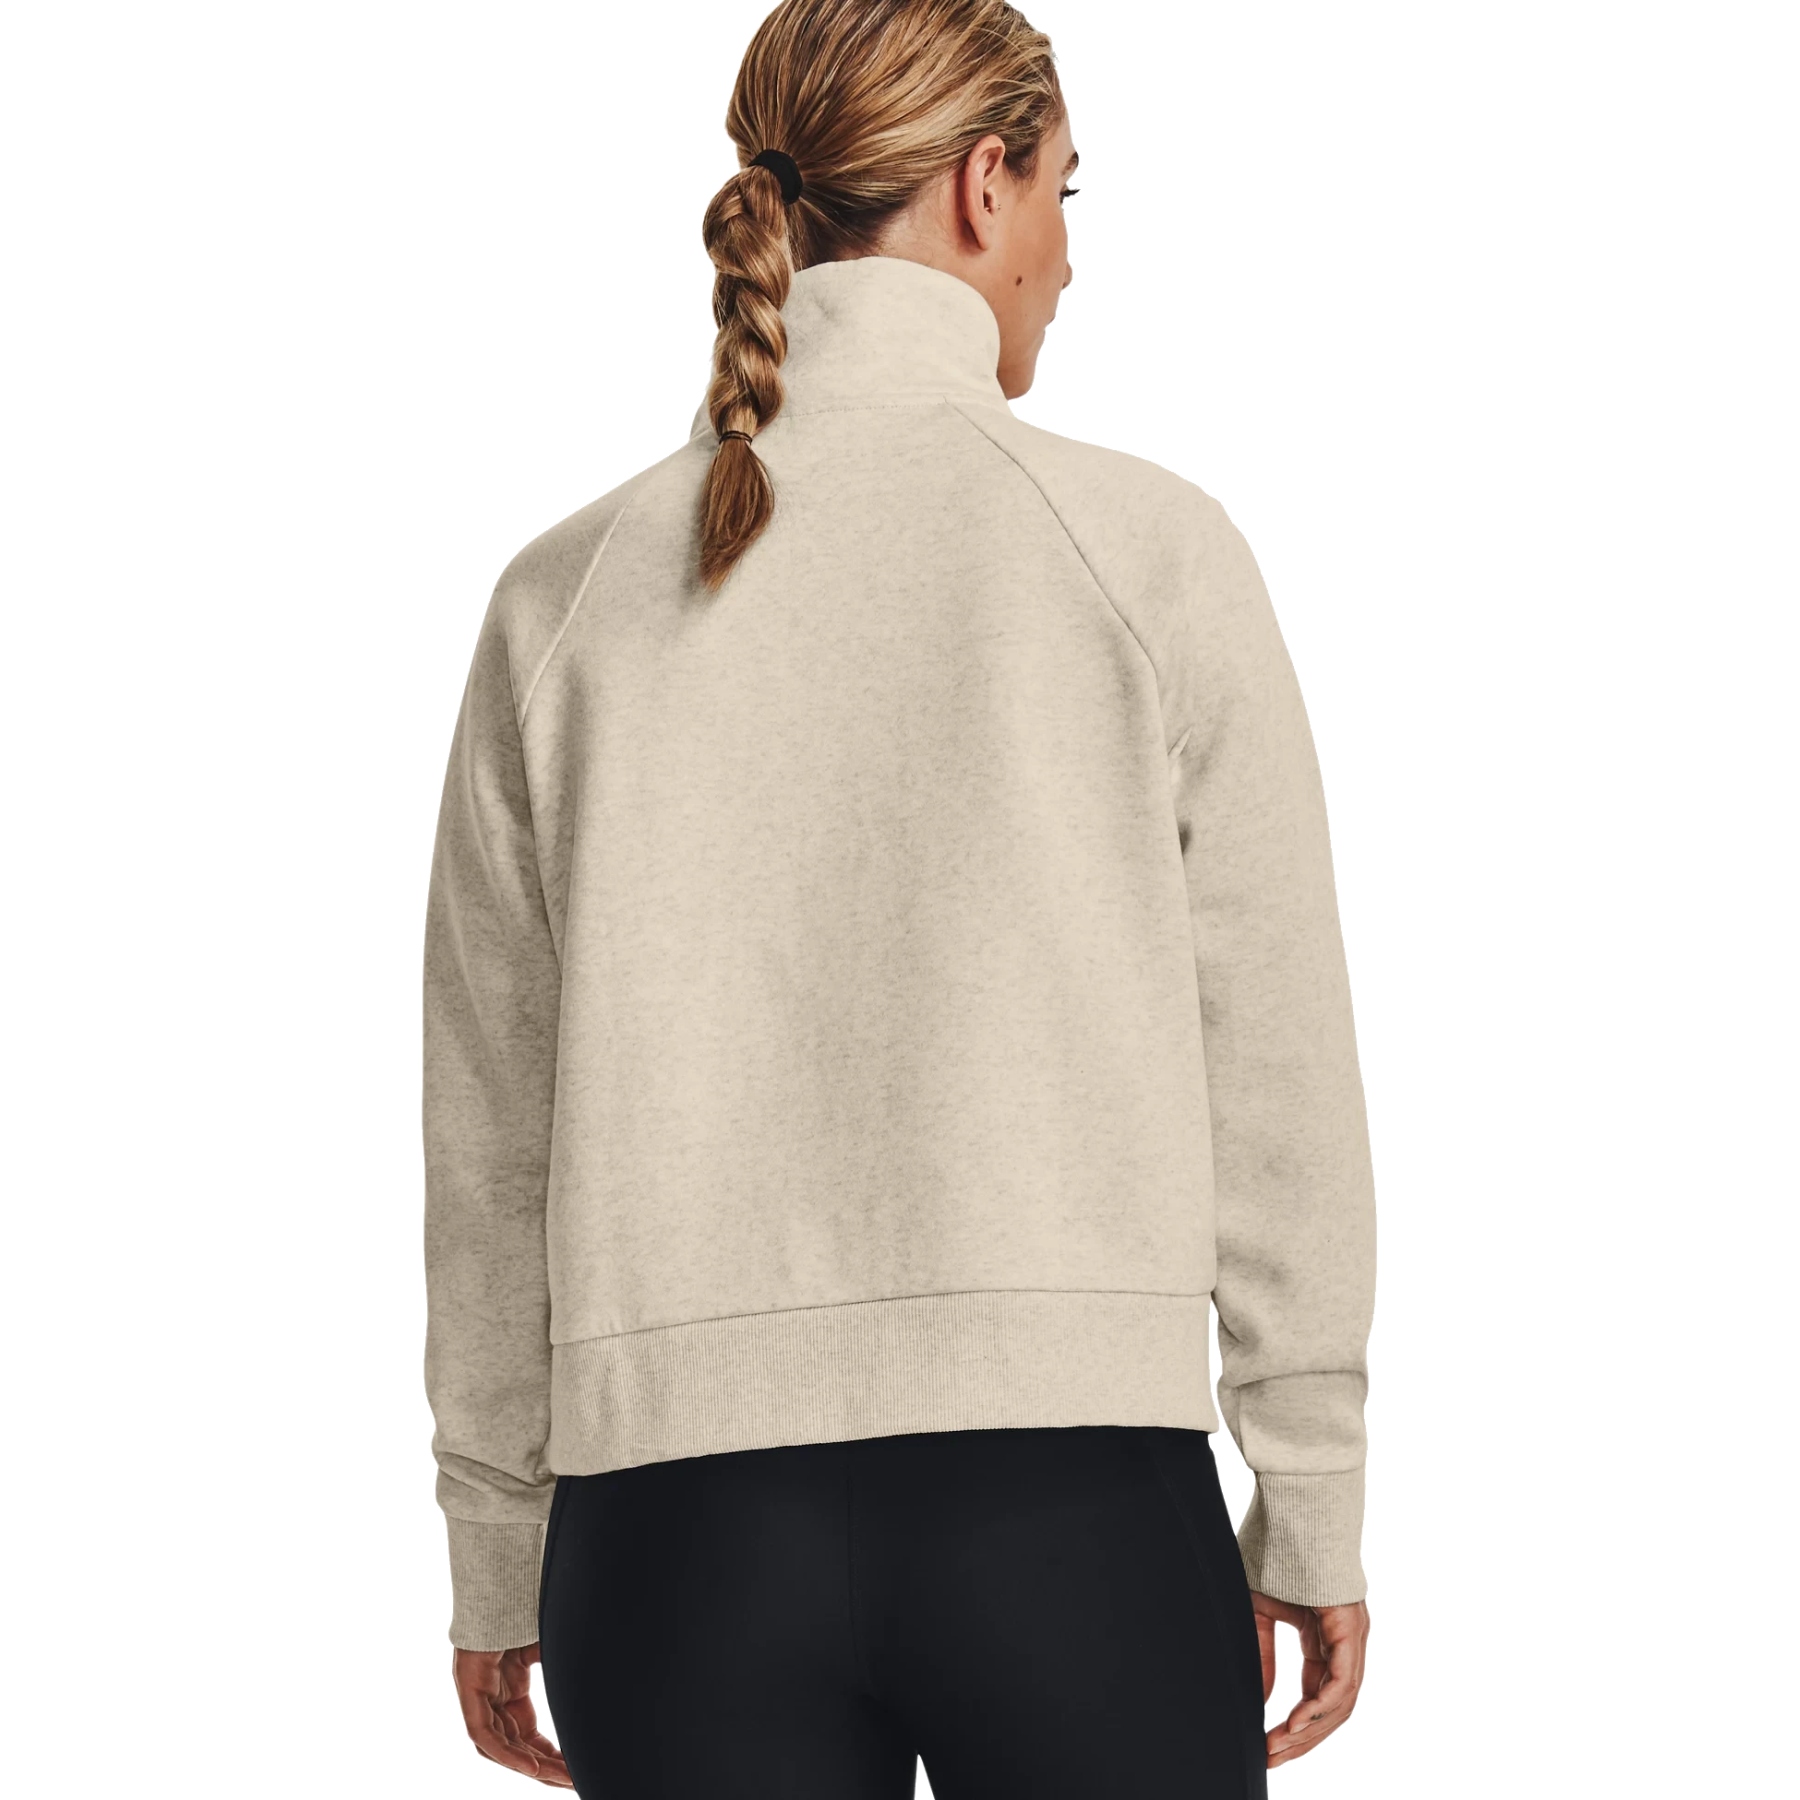 Under Armour UA Rival Fleece ½ Zip Sweater Women - Oatmeal Light